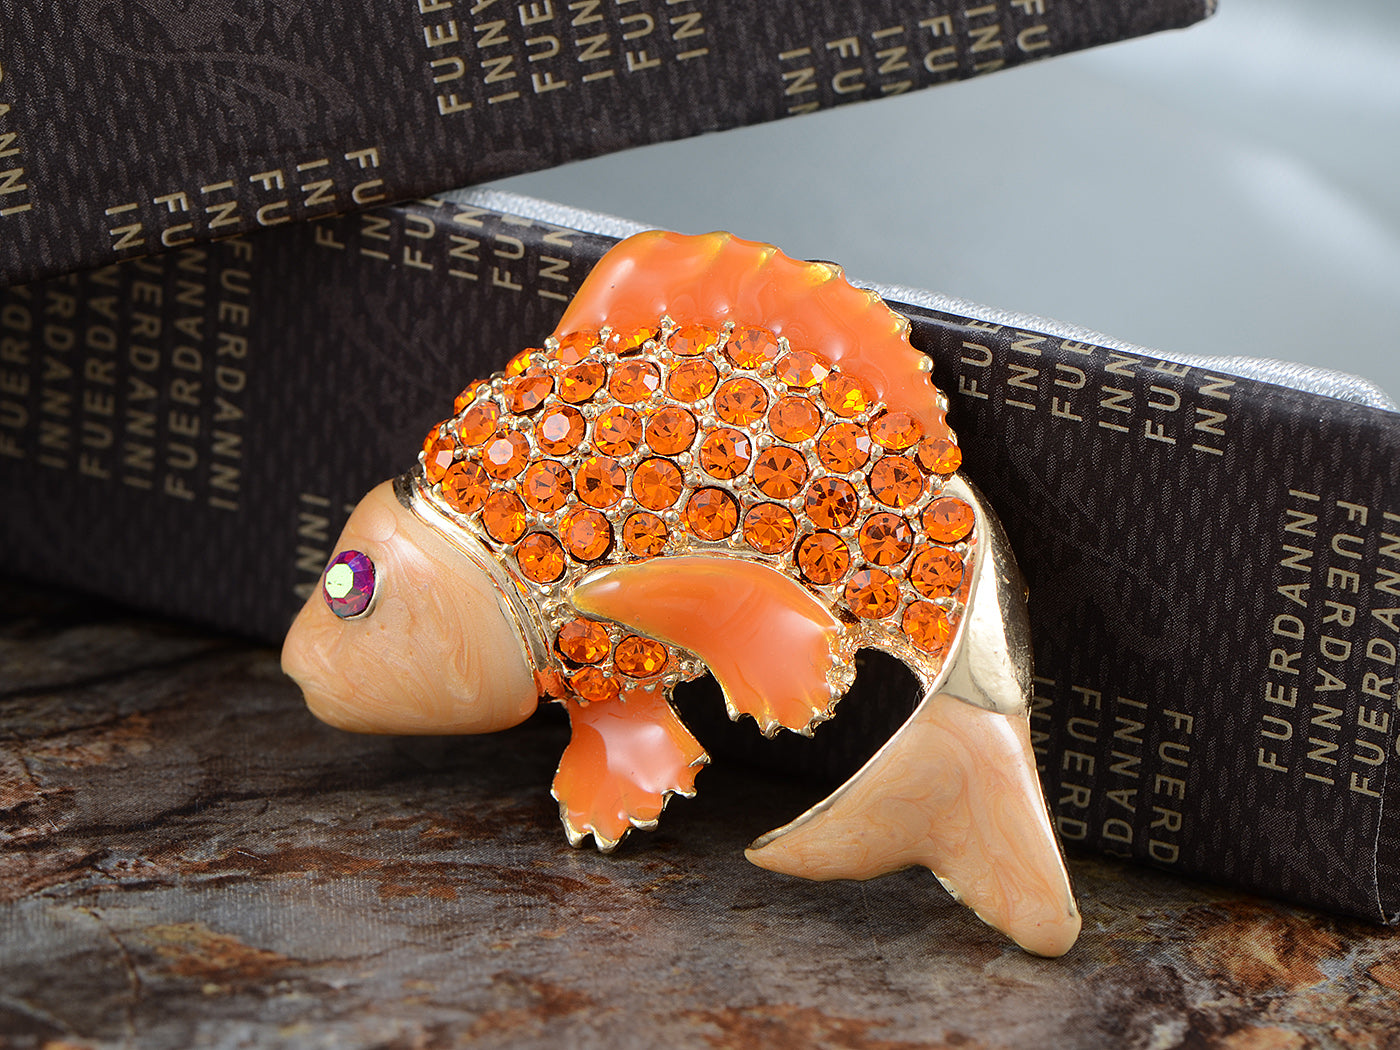 Asian Koi Gold Fish Carp Enamel Rose Pink Animal Pin Brooch